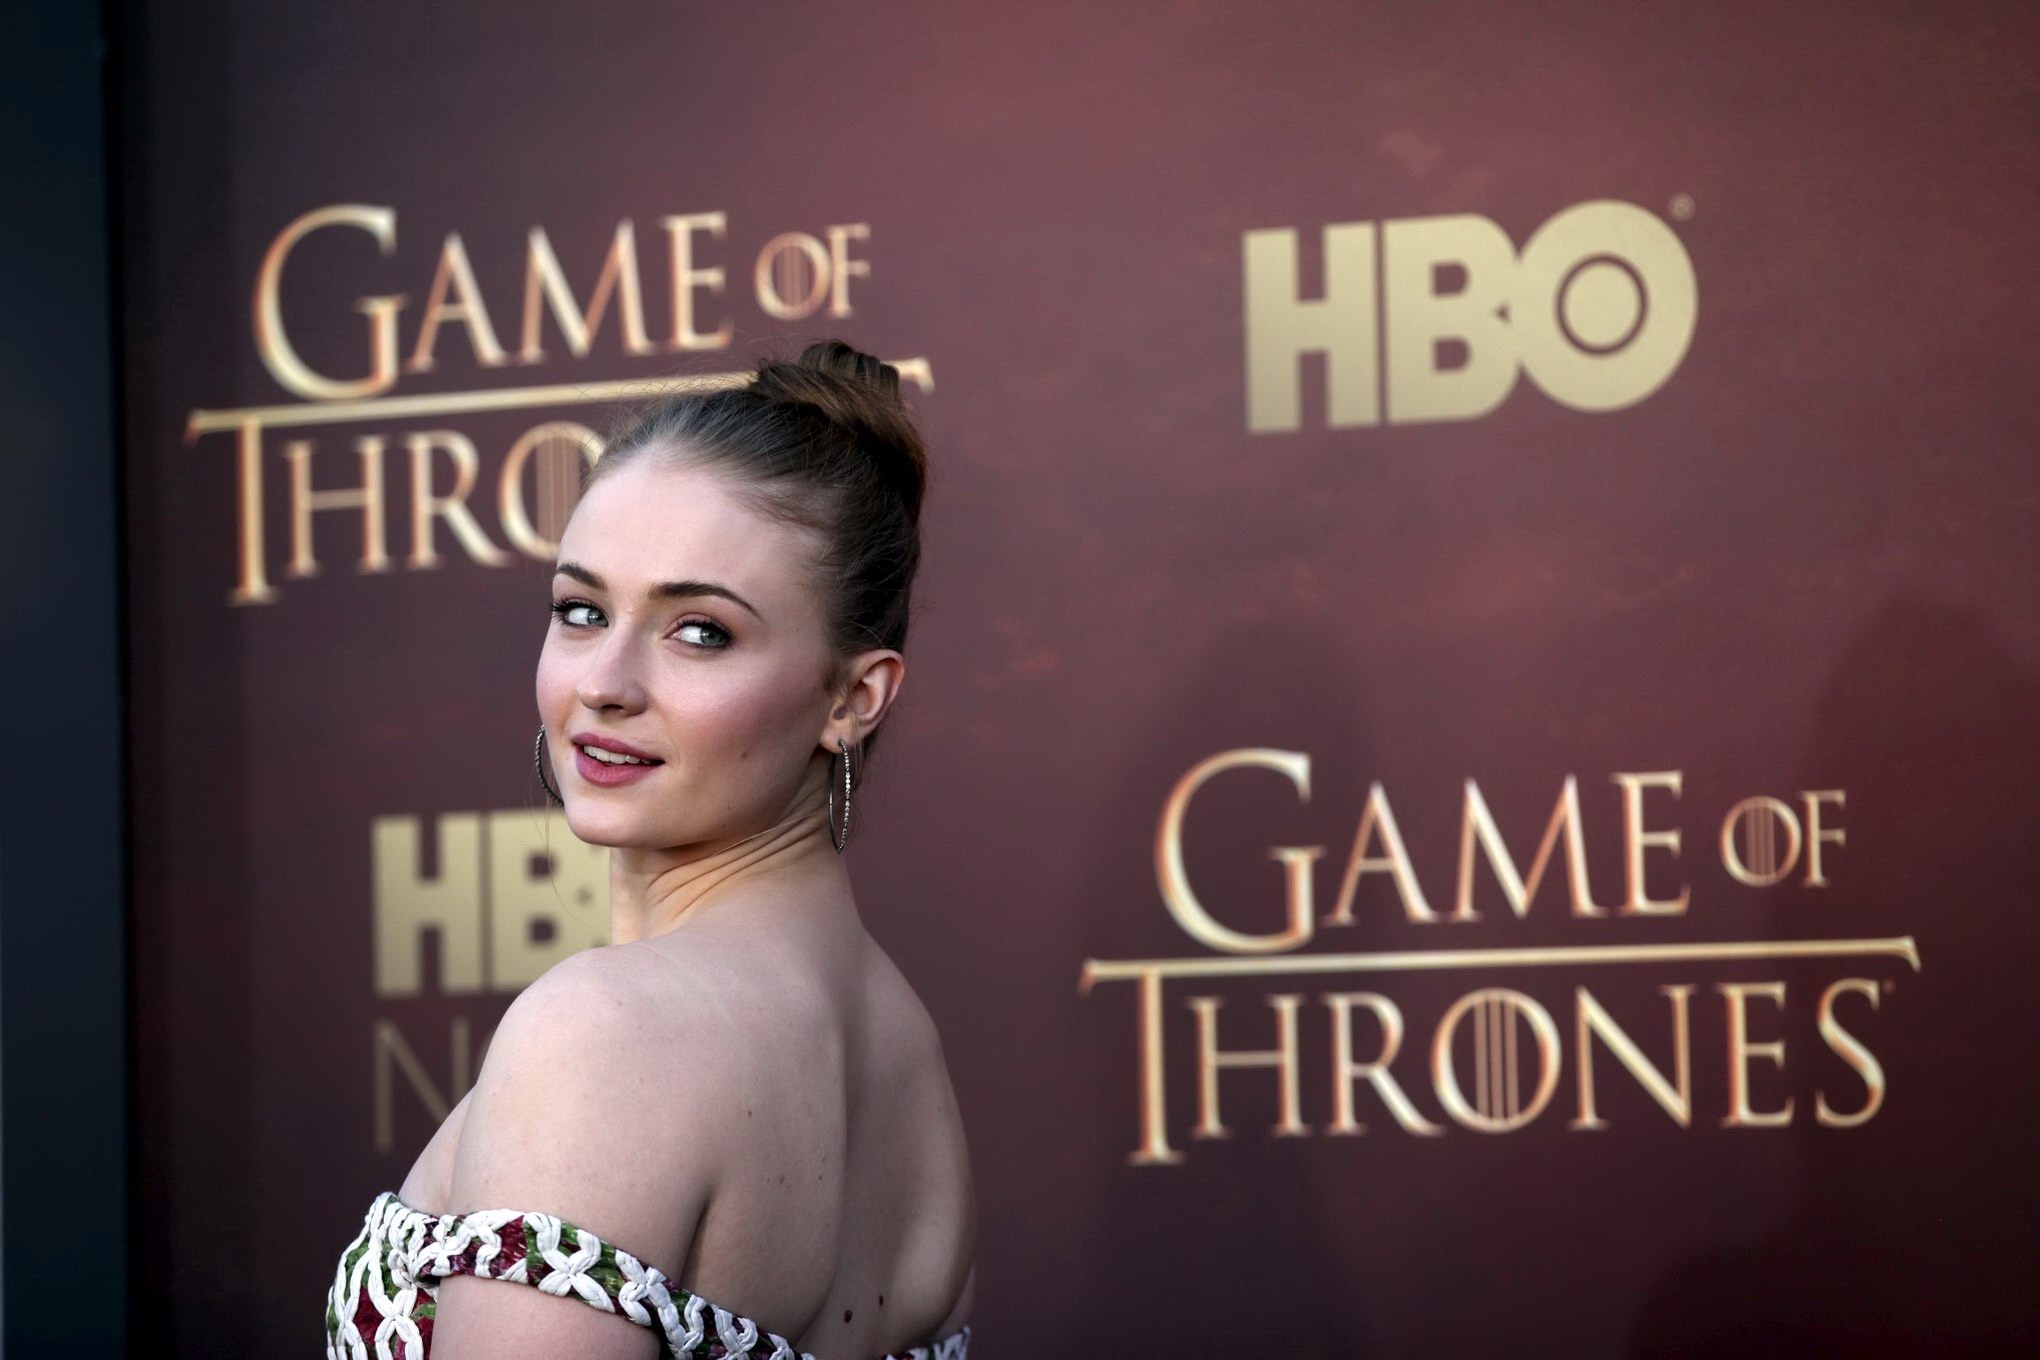 Sophie Turner zeigt riesigen Ausschnitt bei der "Game of Thrones" Staffel 5 Premiere in #75168974